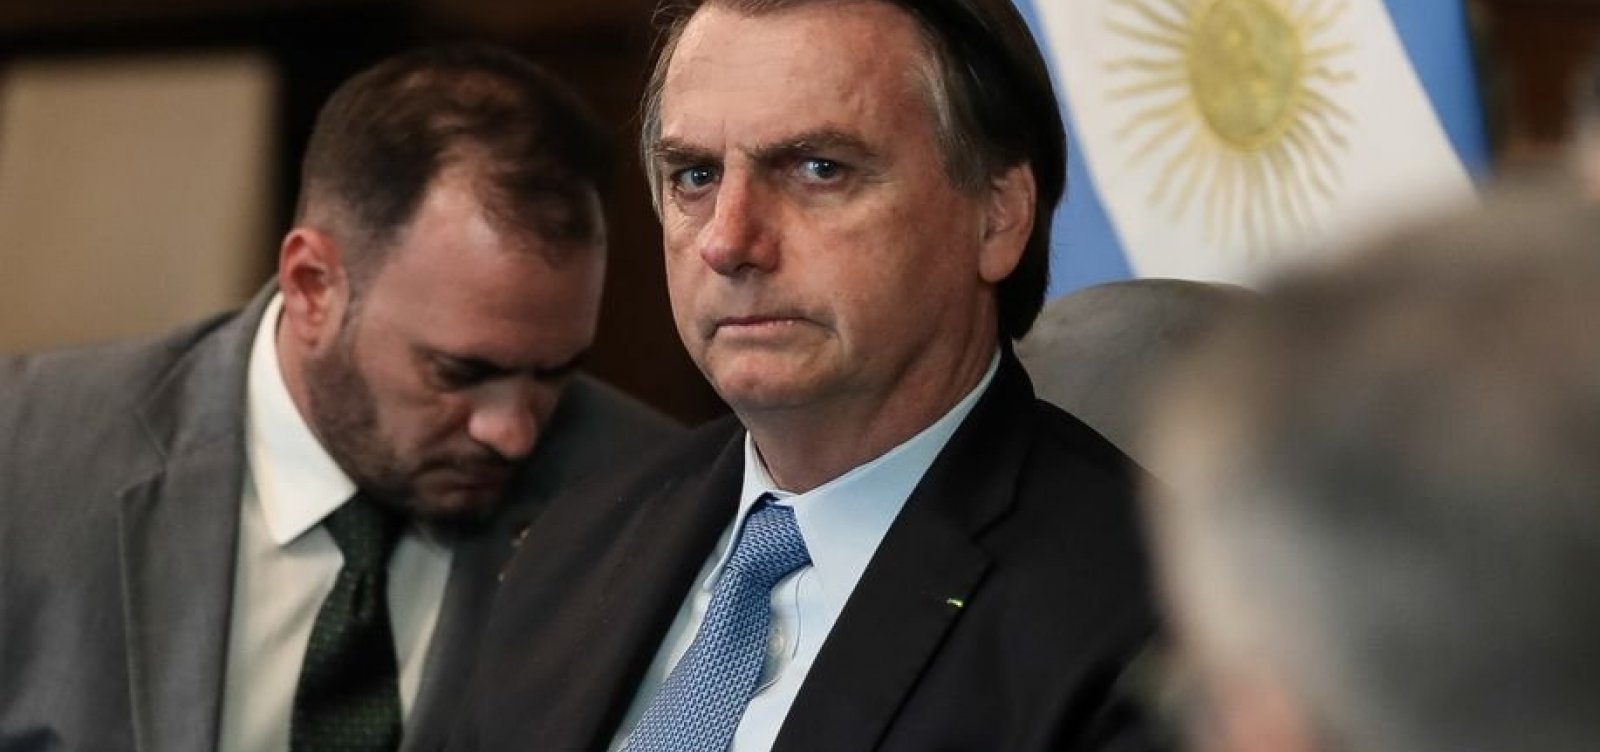 ‘A volta de Cristina Kirchner’ colocará ‘a Argentina no caminho da Venezuela’, diz Bolsonaro após primárias argentinas